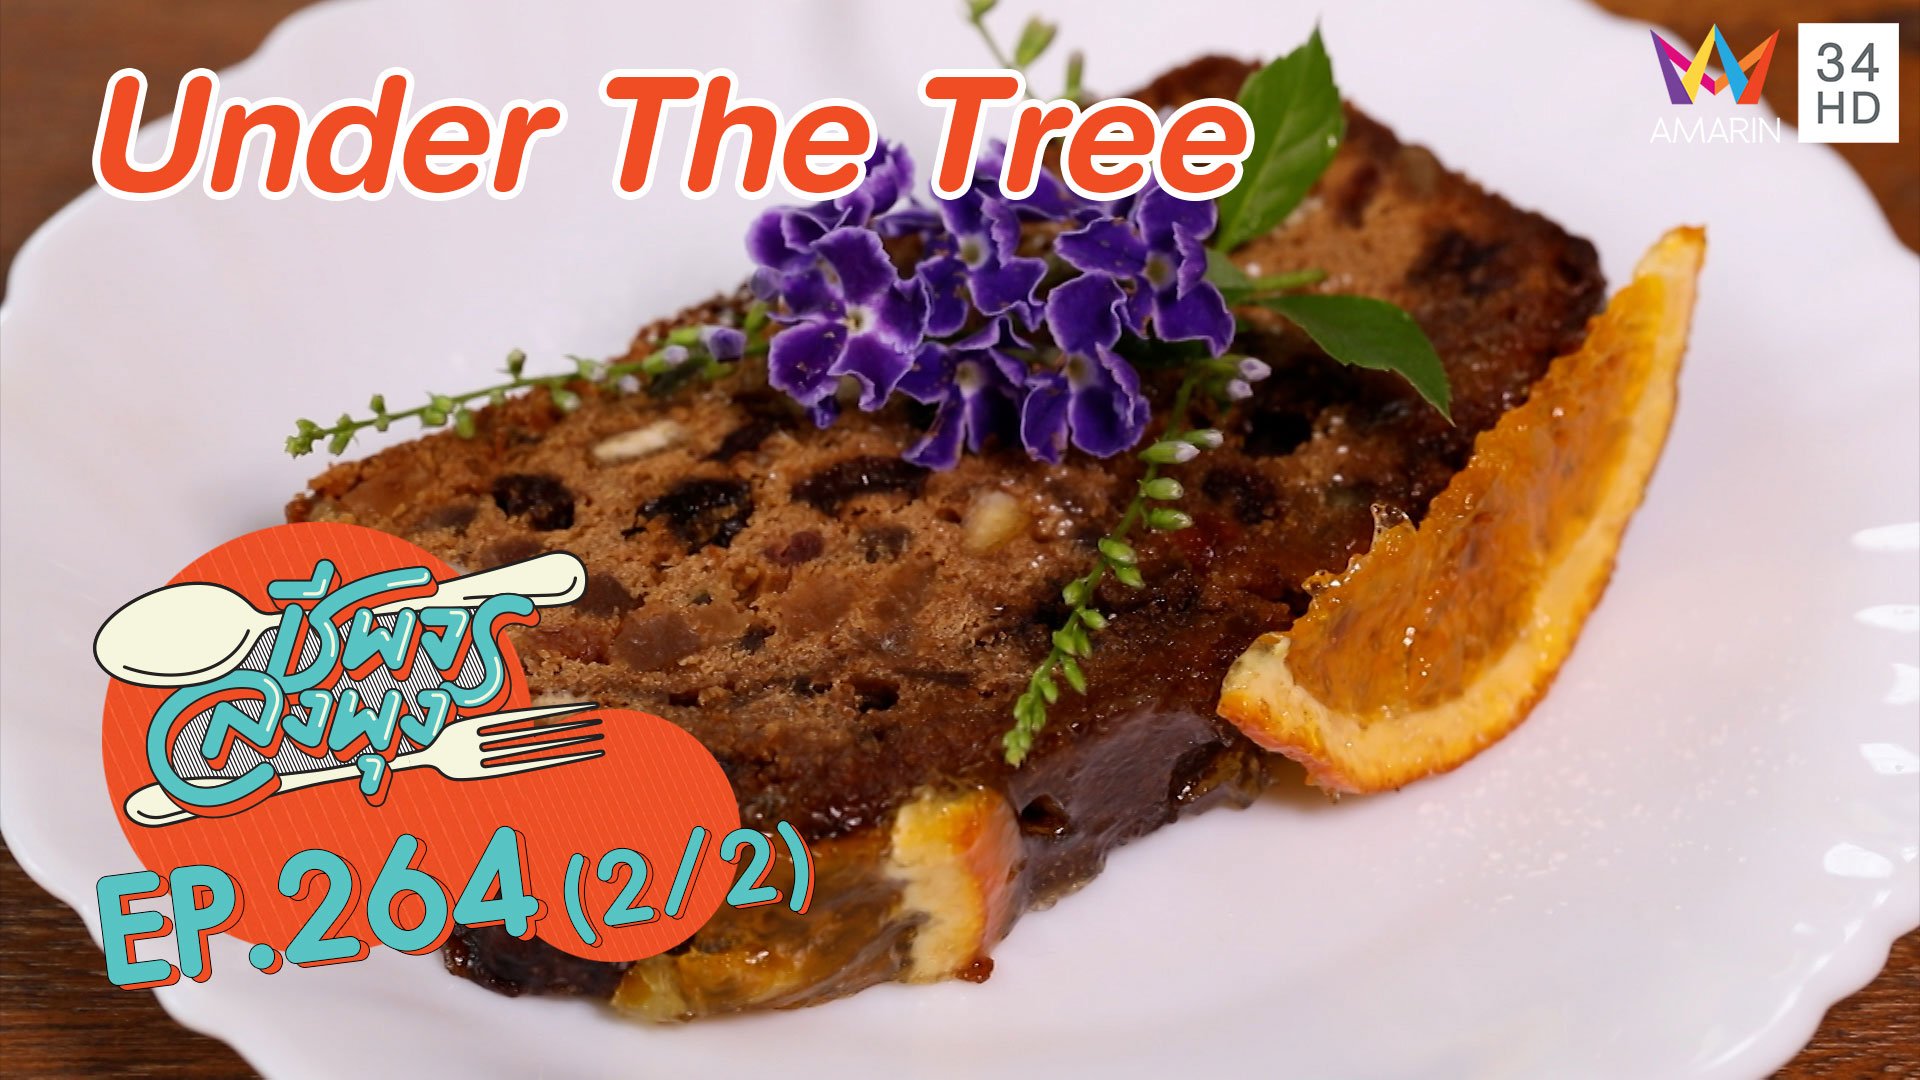 'Under The Tree' บรรยากาศดีขนมอร่อย | ชีพจรลงพุง | 19 ธ.ค. 63 (2/2) | AMARIN TVHD34